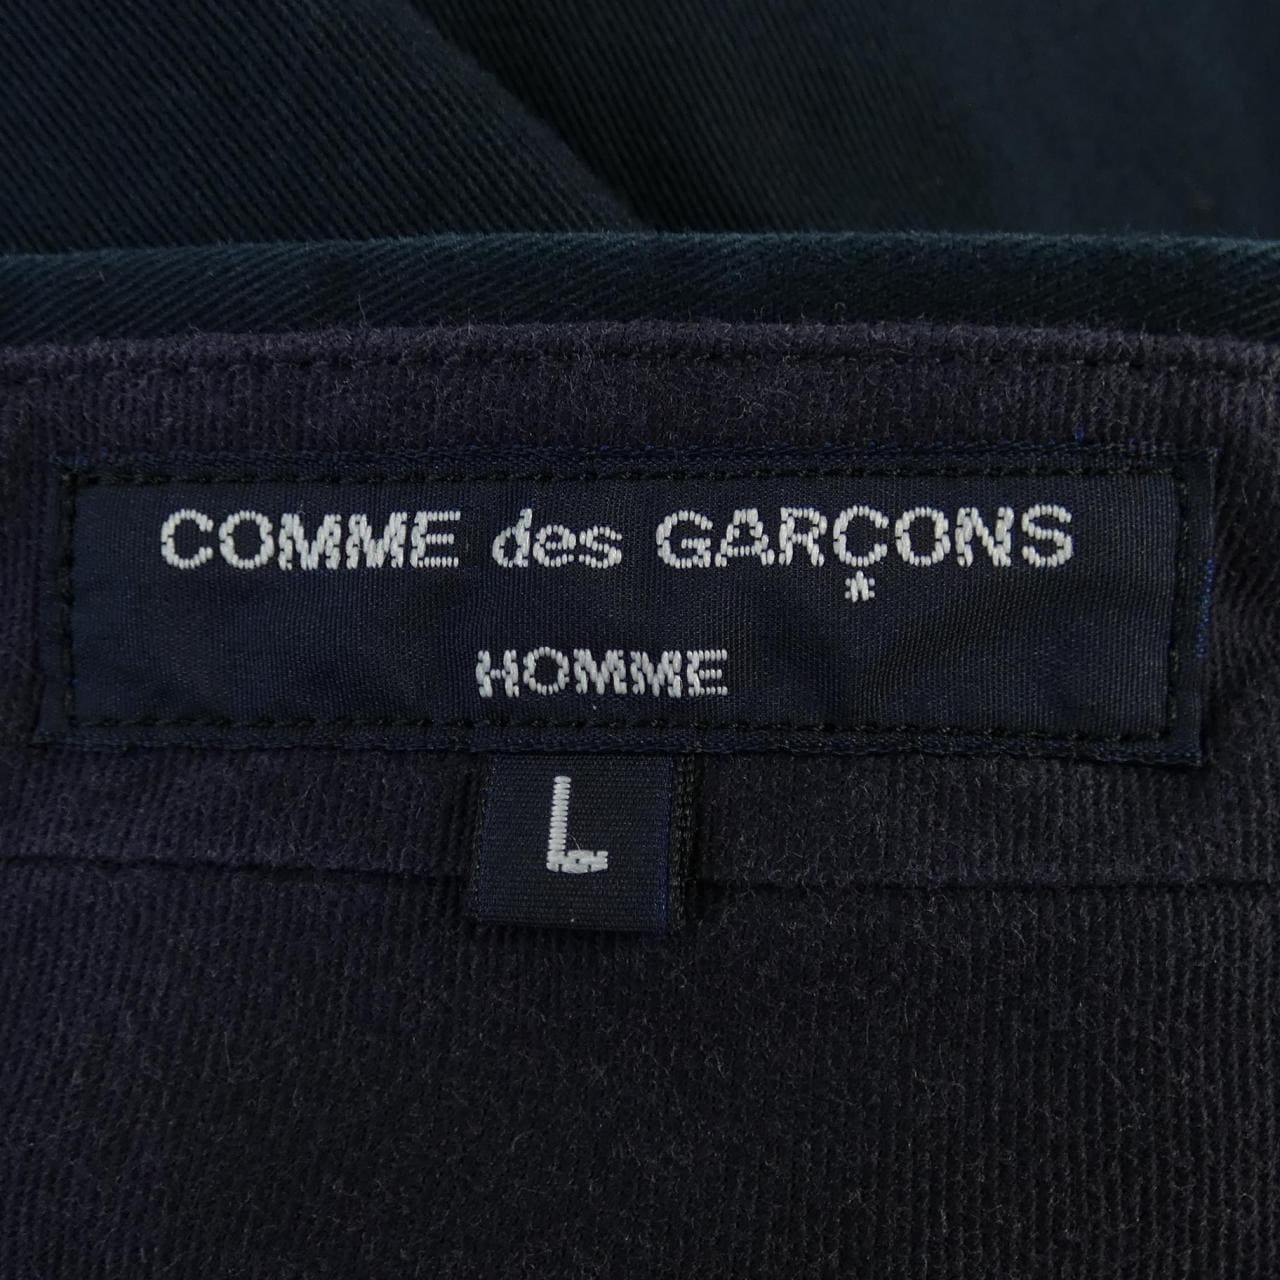 COMMME des GARCONS裤子